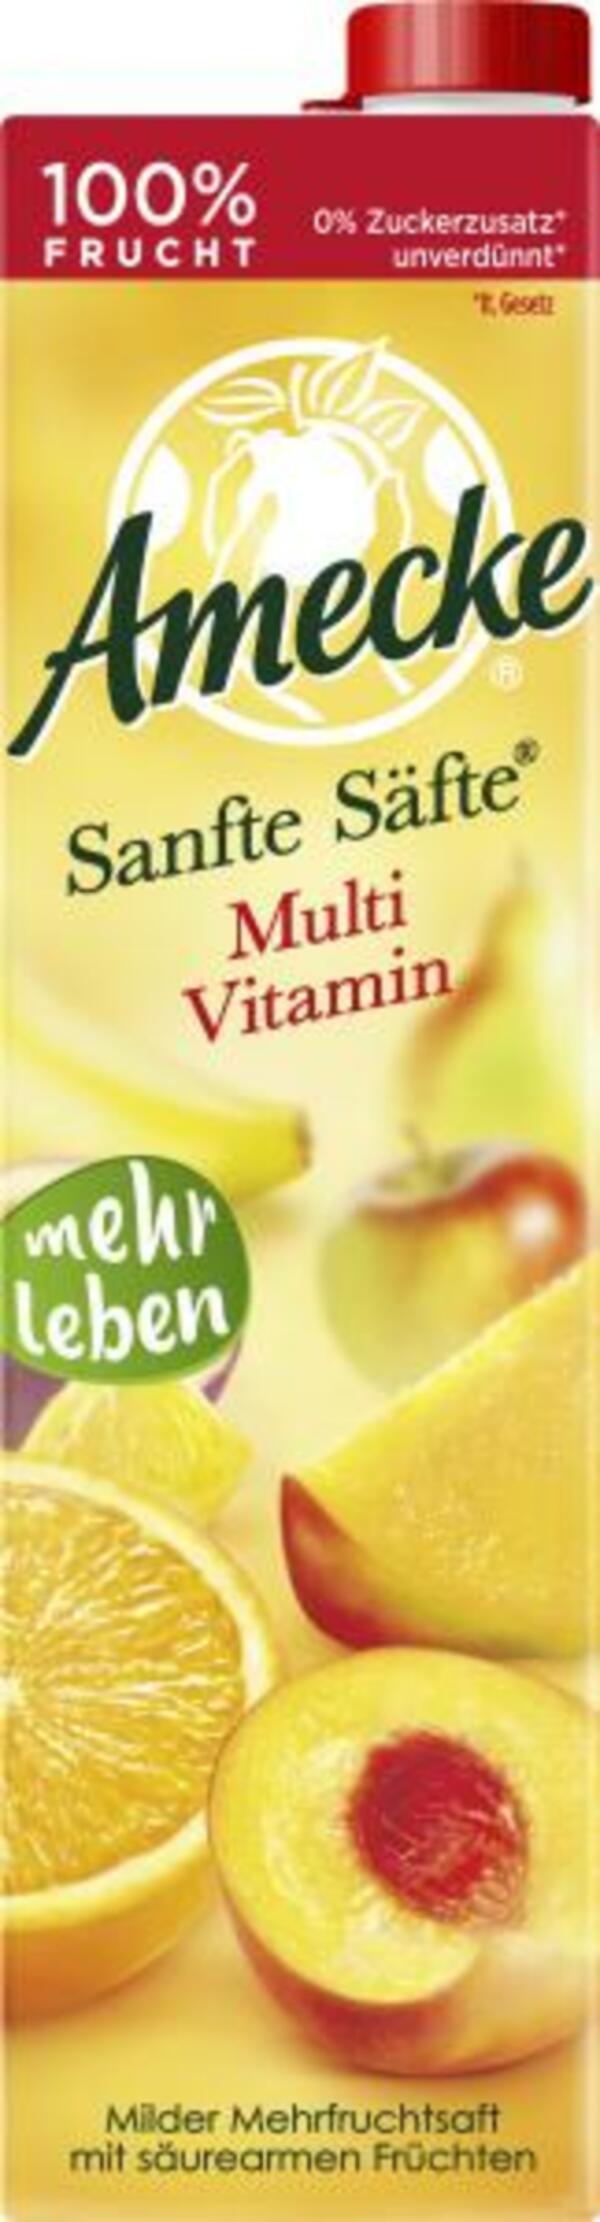 Bild 1 von Amecke Sanfte Säfte Multi Vitamin